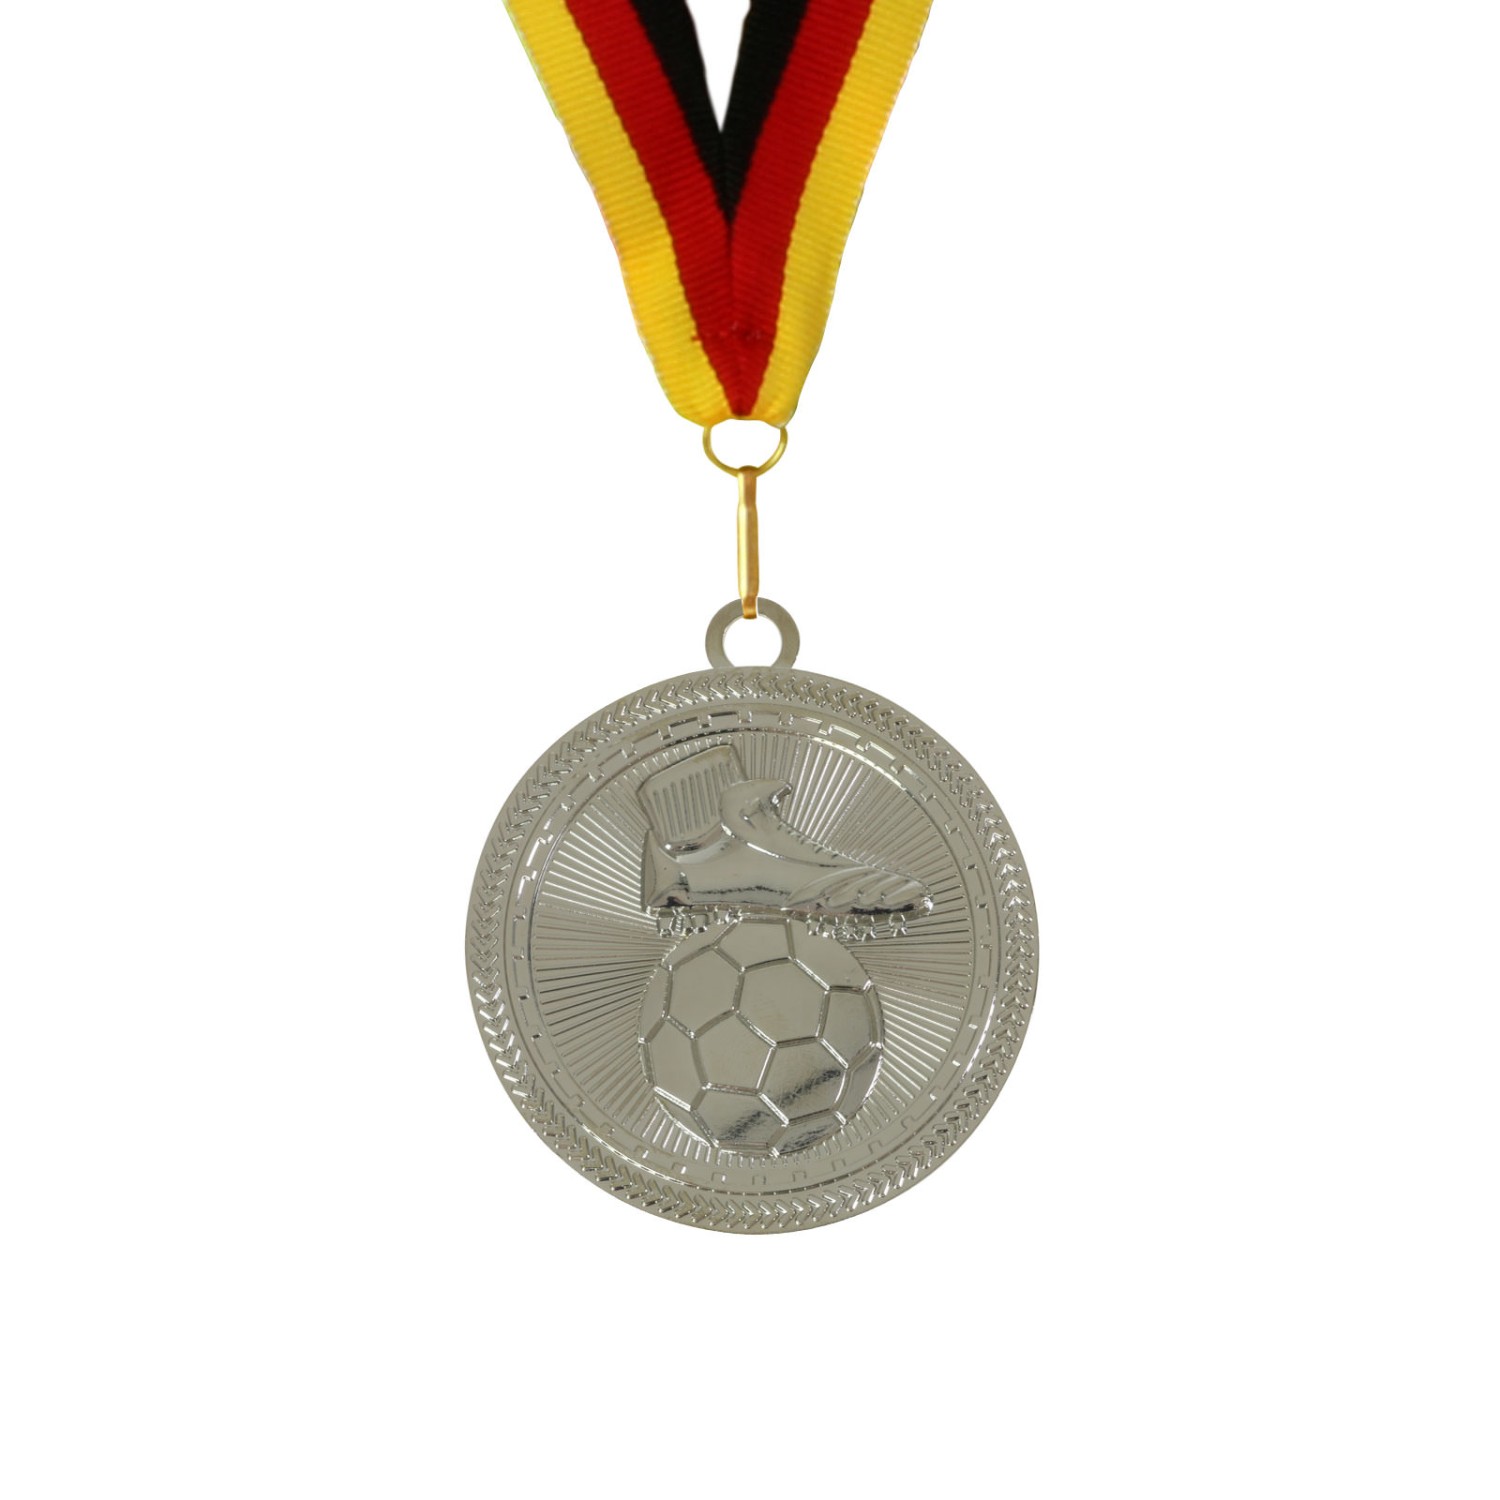 2. Foto Medaille Fußball 70 mm extra groß und schwer gold silber bronze auch im Set inklusive Band (Sorte: Set je 1x gold / silber / bronze)